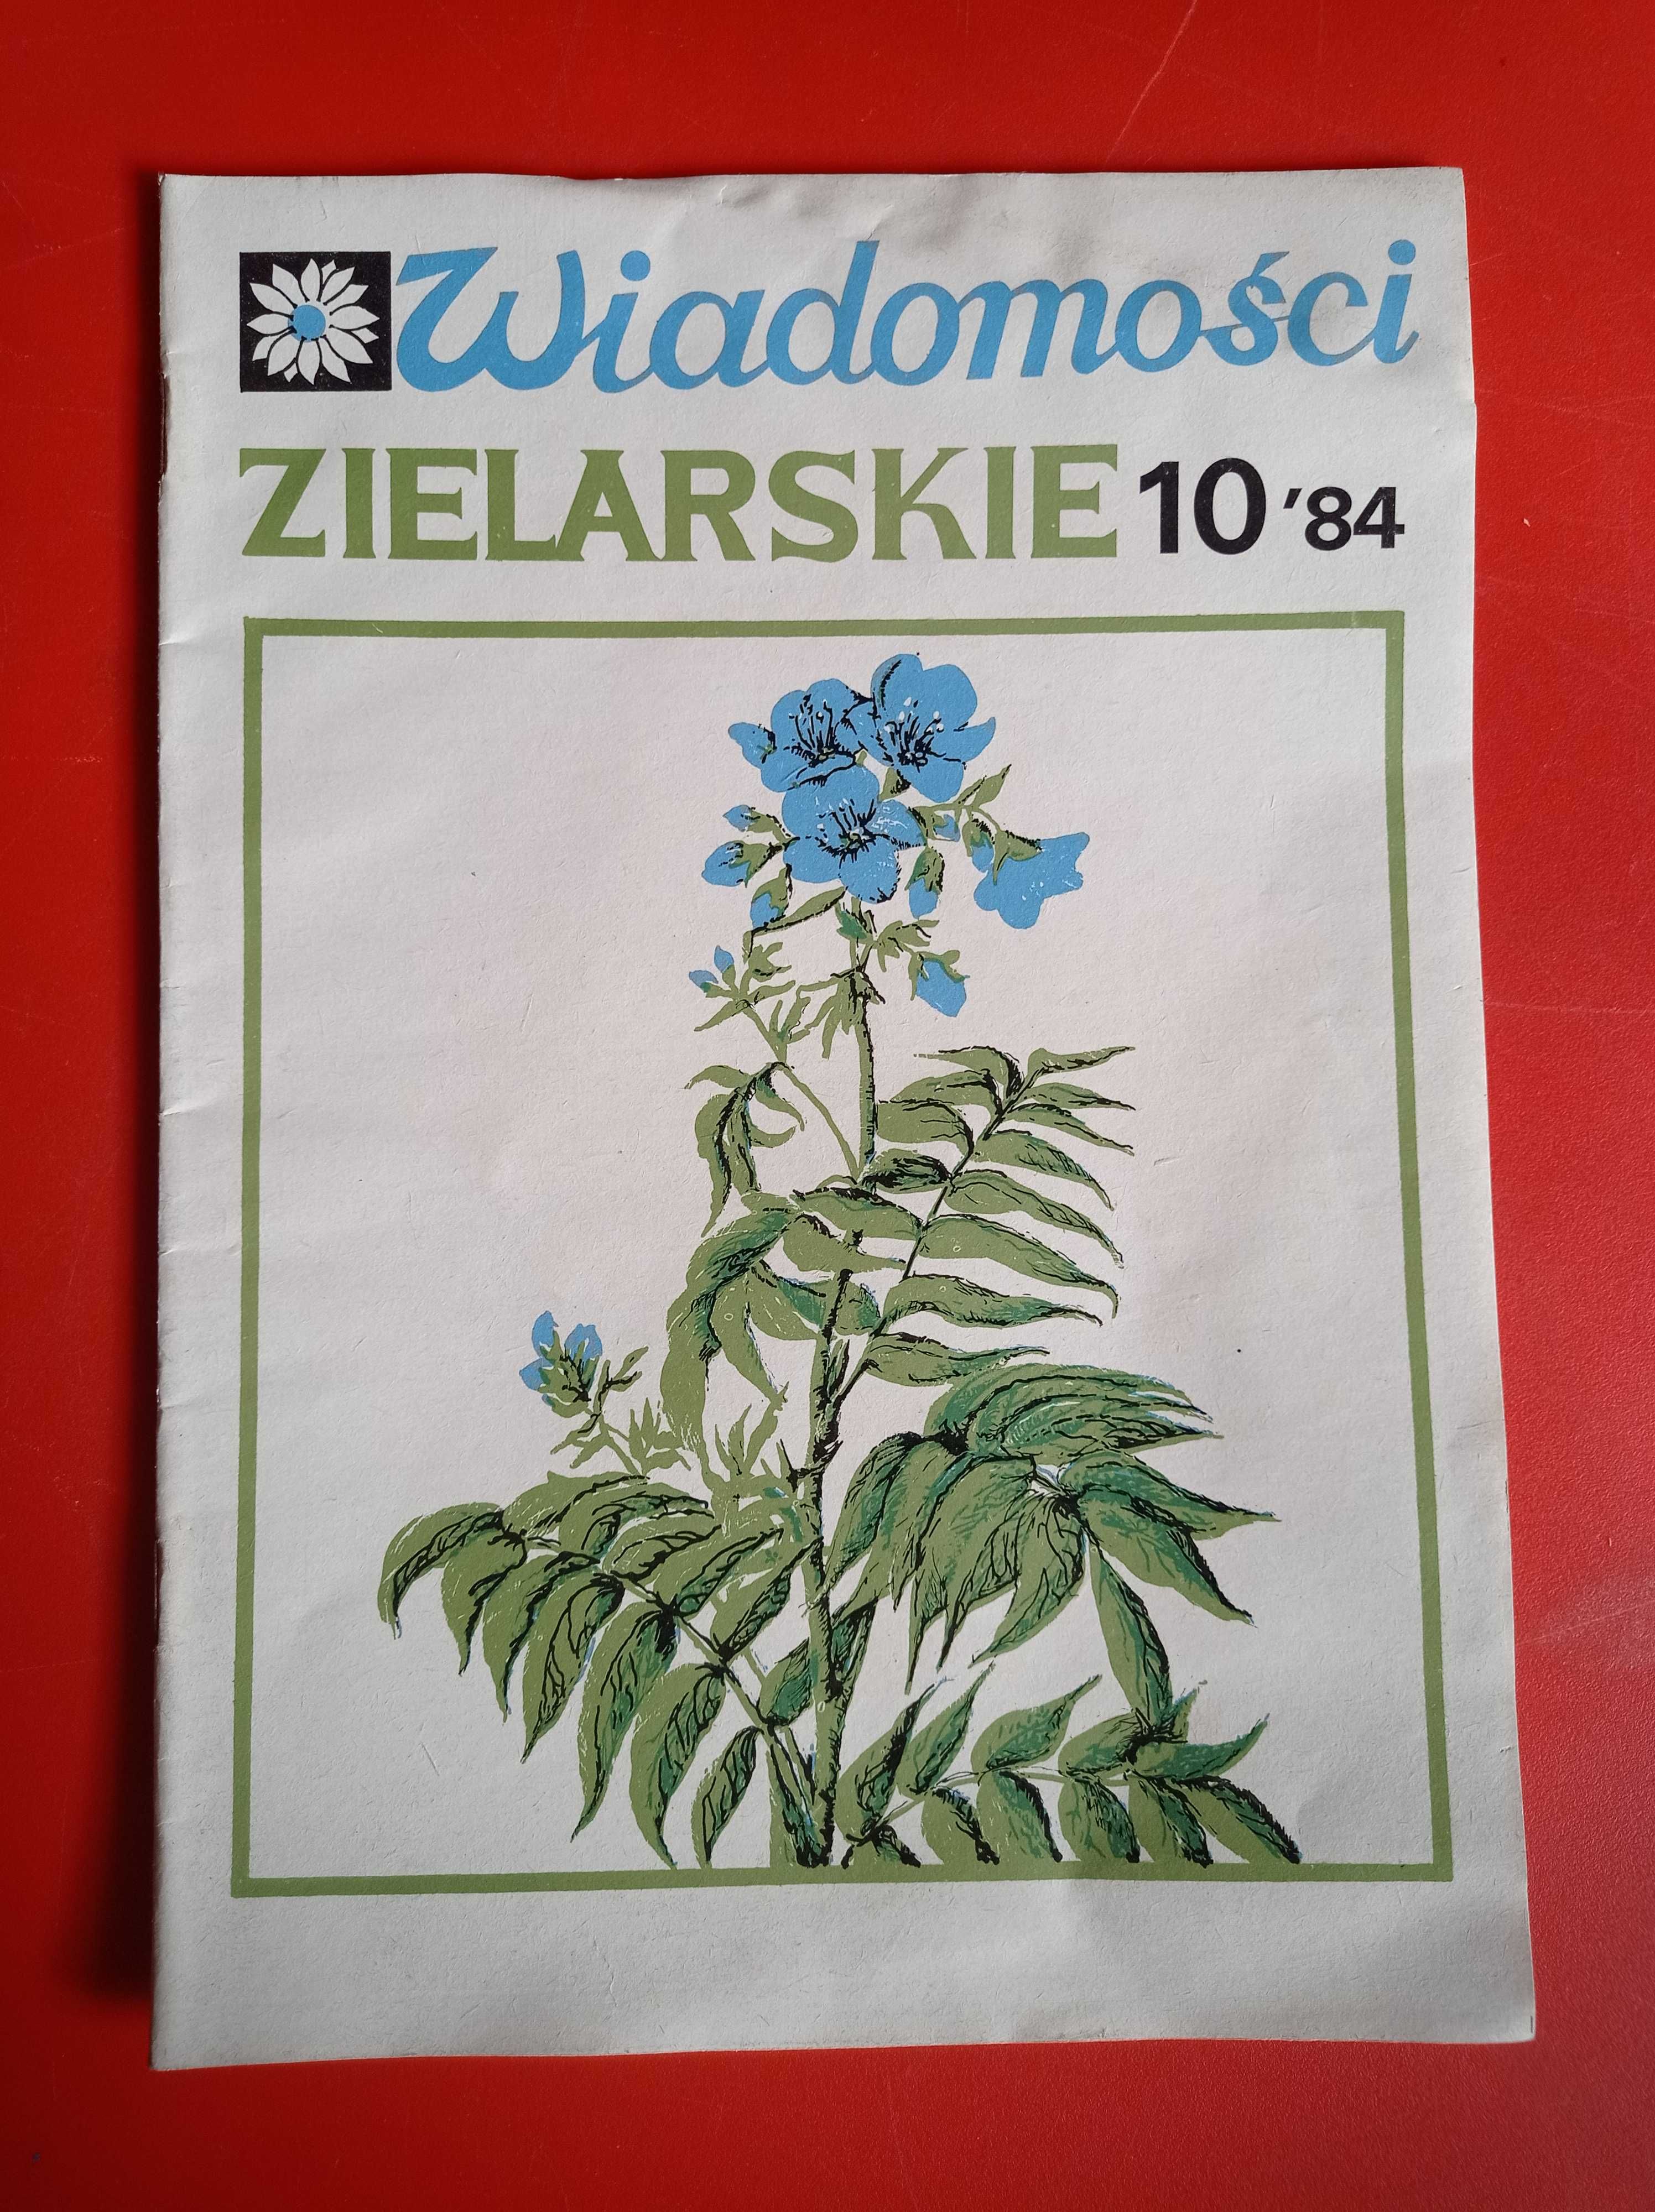 Wiadomości zielarskie nr 10/1984, październik 1984